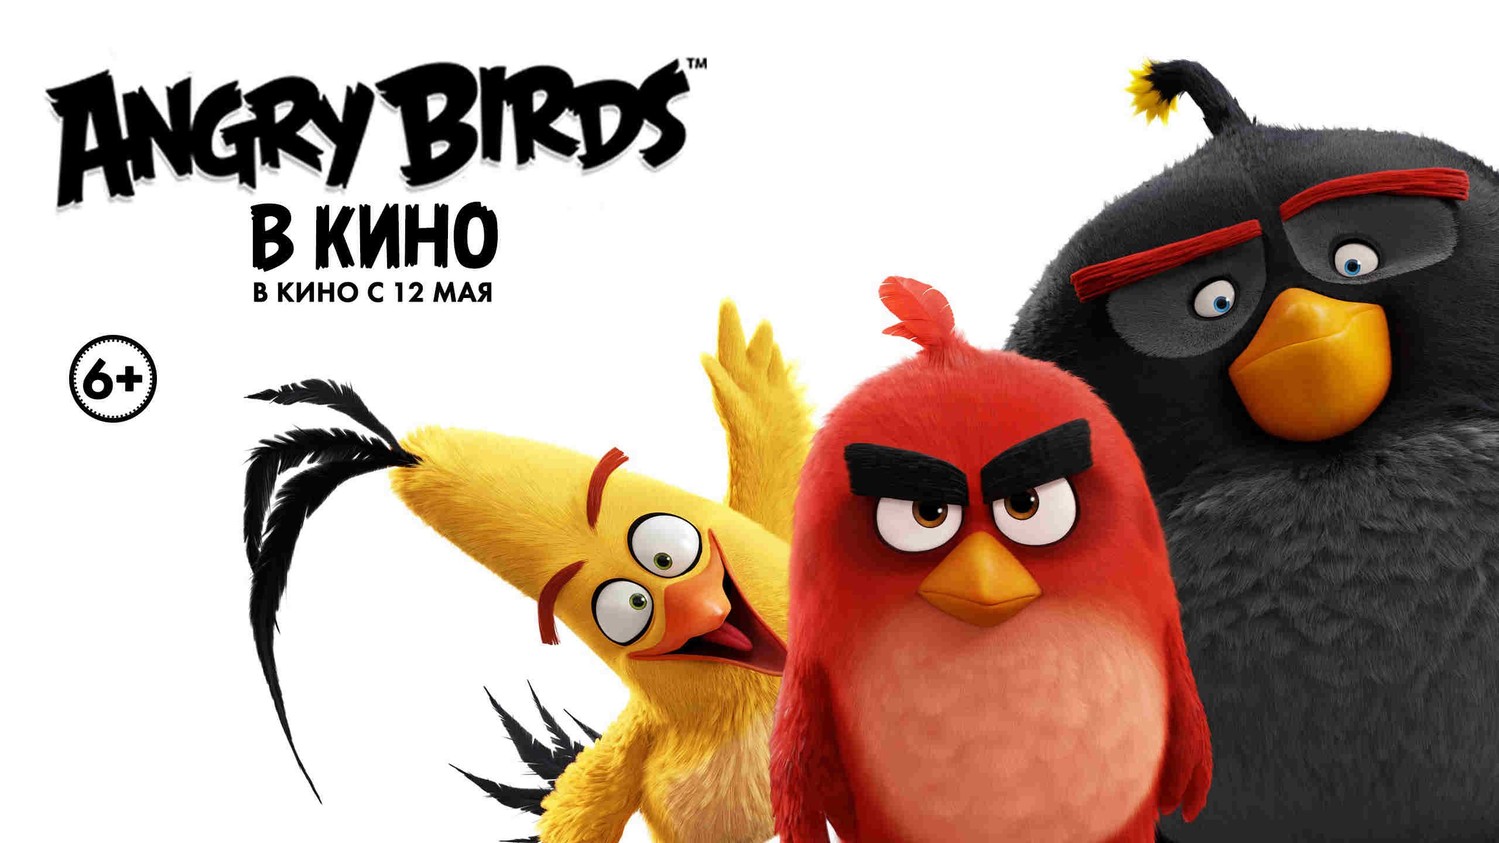 Злые птички (Angry Birds) в кино 2016